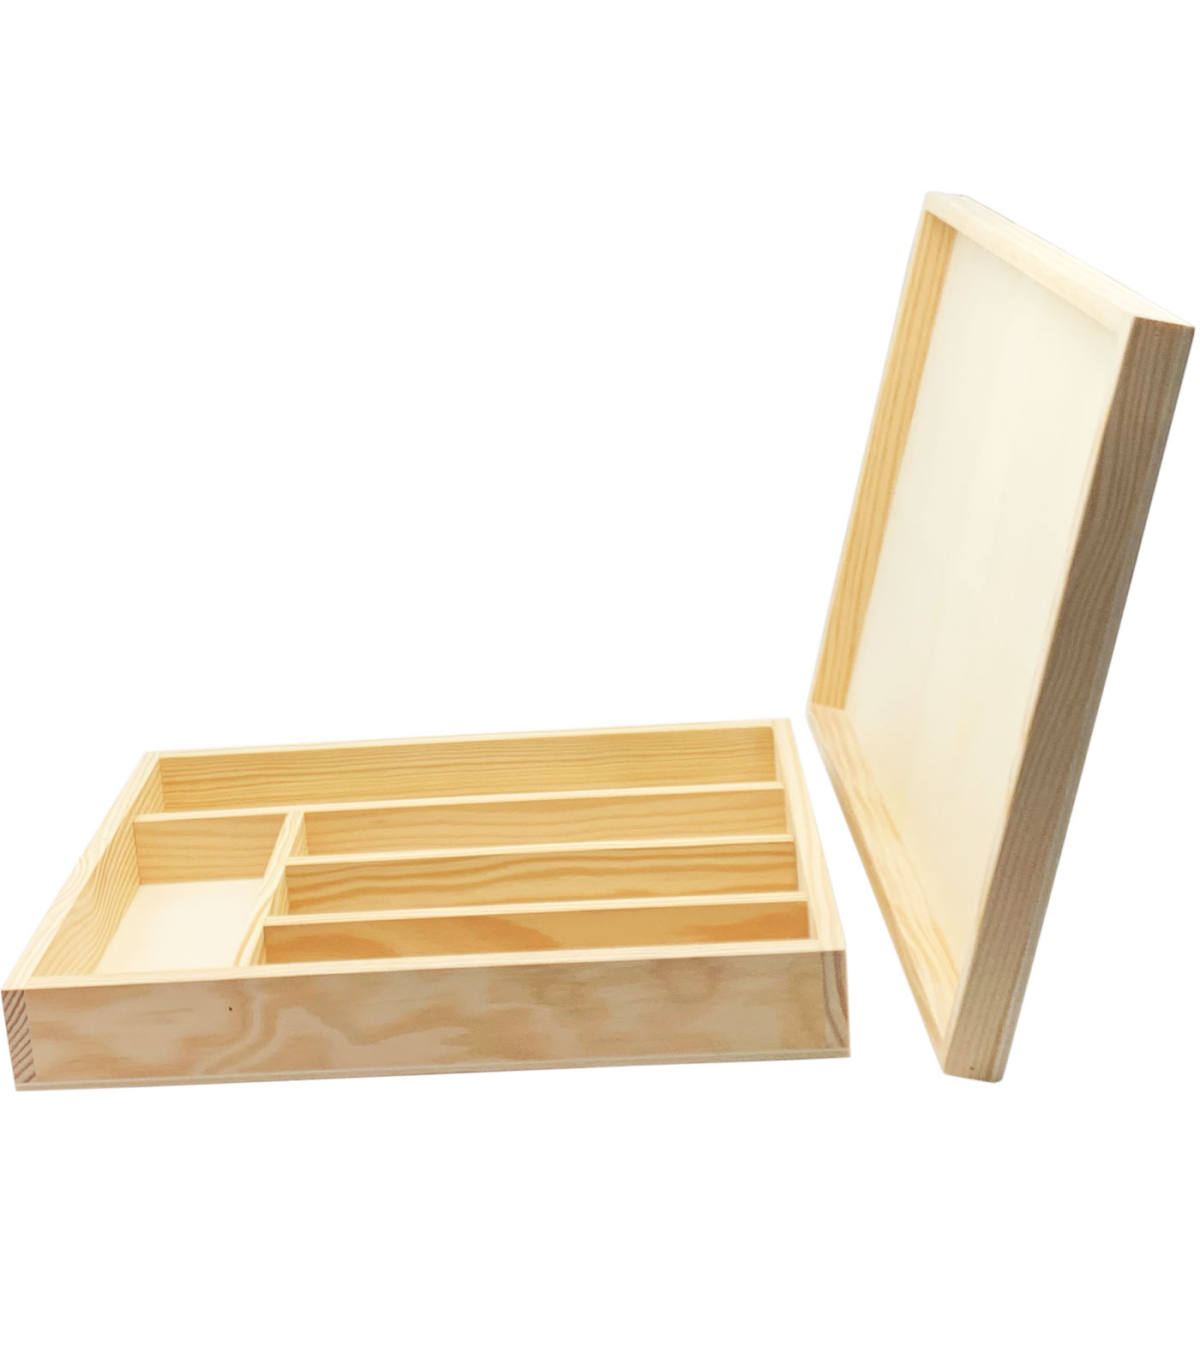 Tradineur - Cubertero, organizador de cubiertos de madera con tapa